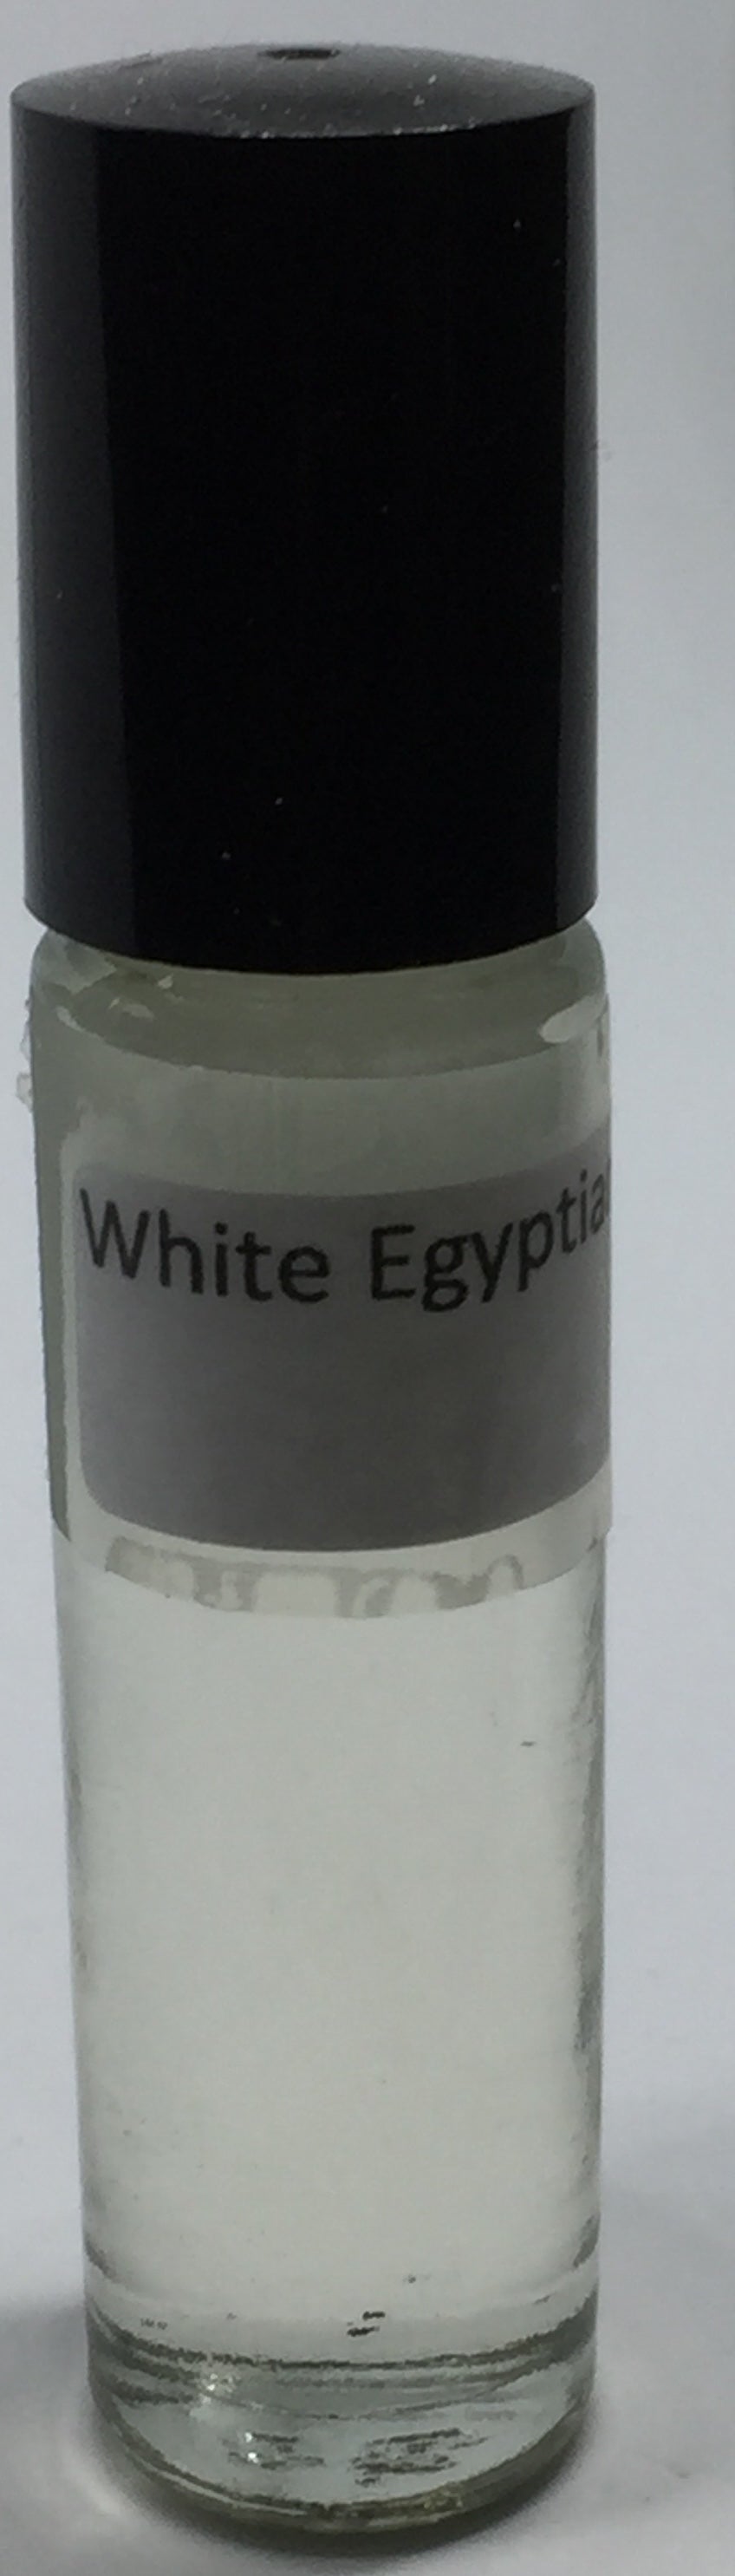 White Egyptian Musk: Fragrance(Perfume) Body Oil Unisex